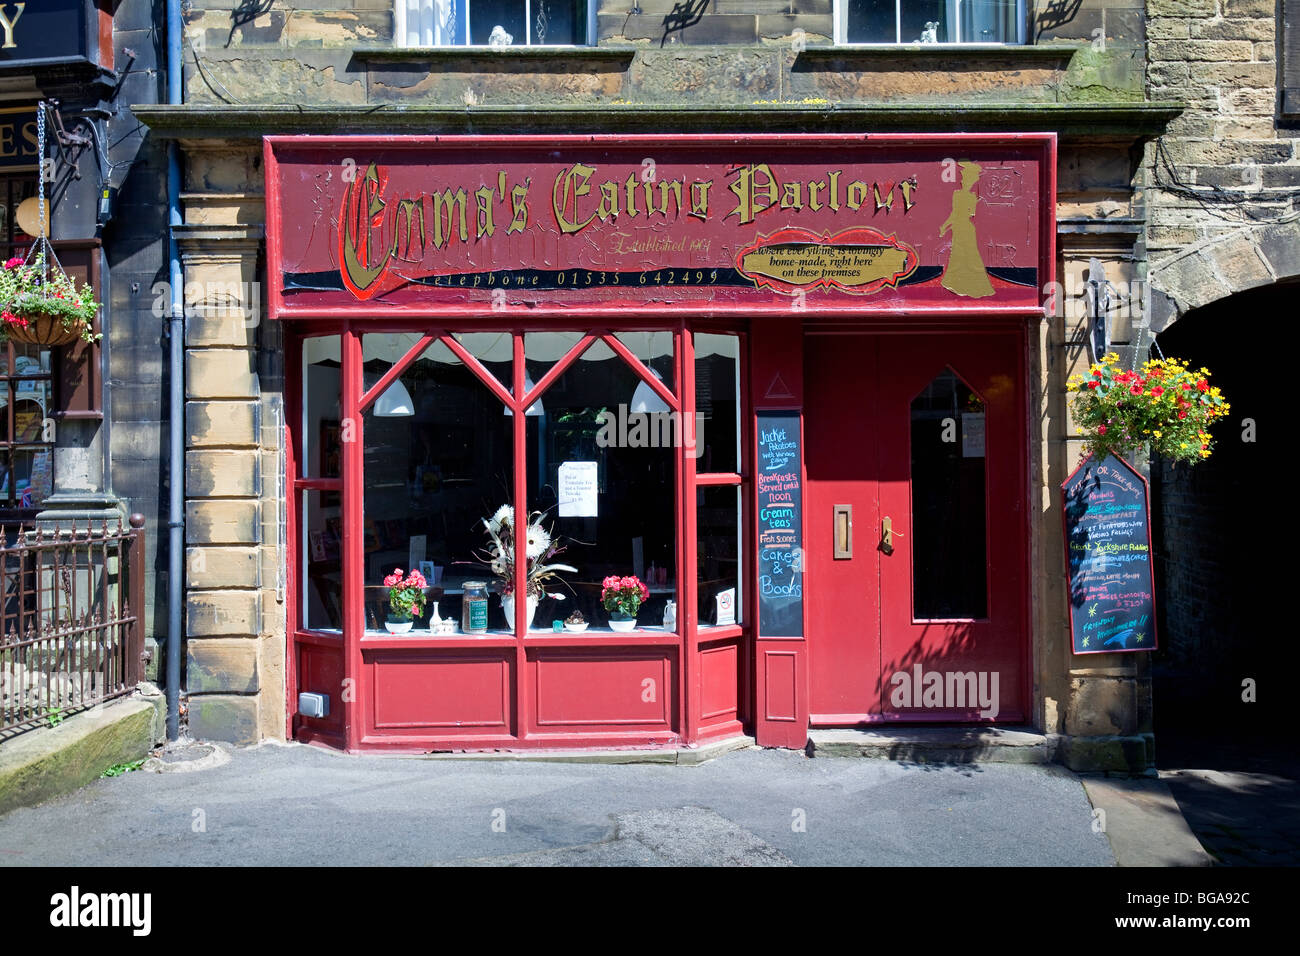 Main Street con la sua tea shop chiamata 'Emma's Eating Parlor', Haworth, West Yorkshire, Inghilterra, Regno Unito Foto Stock